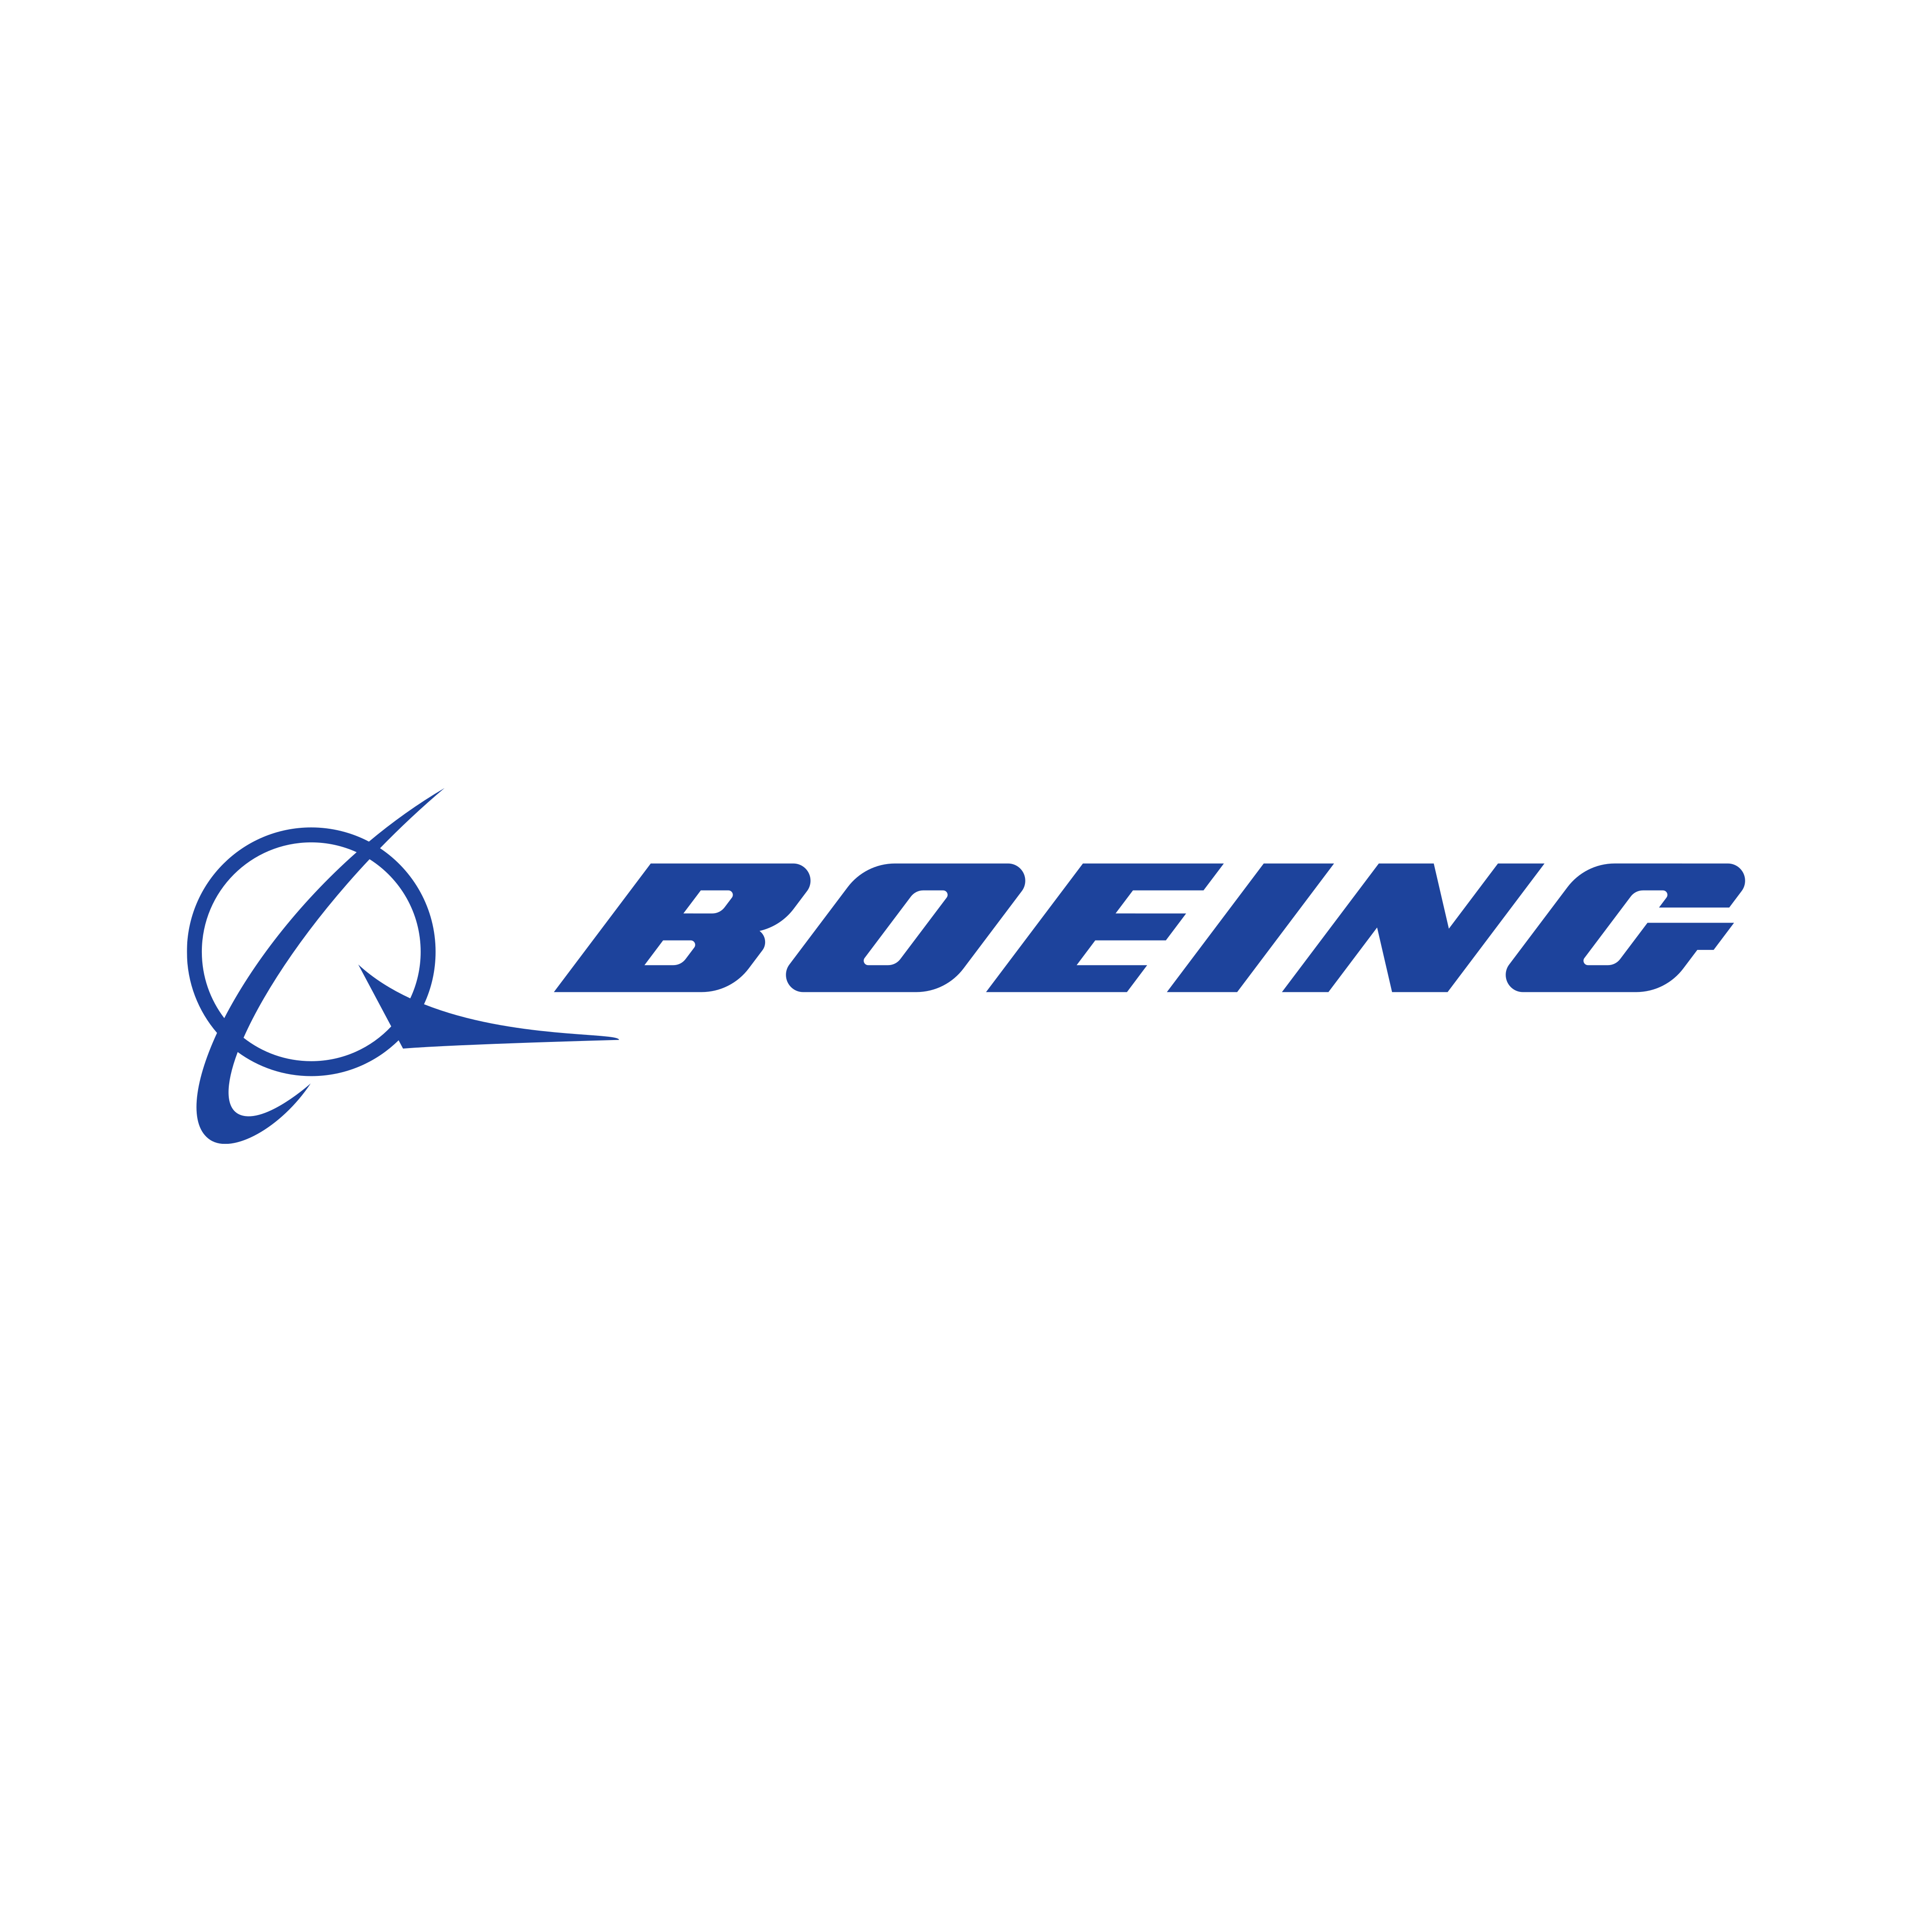 boeing logo 0 - Boeing Logo